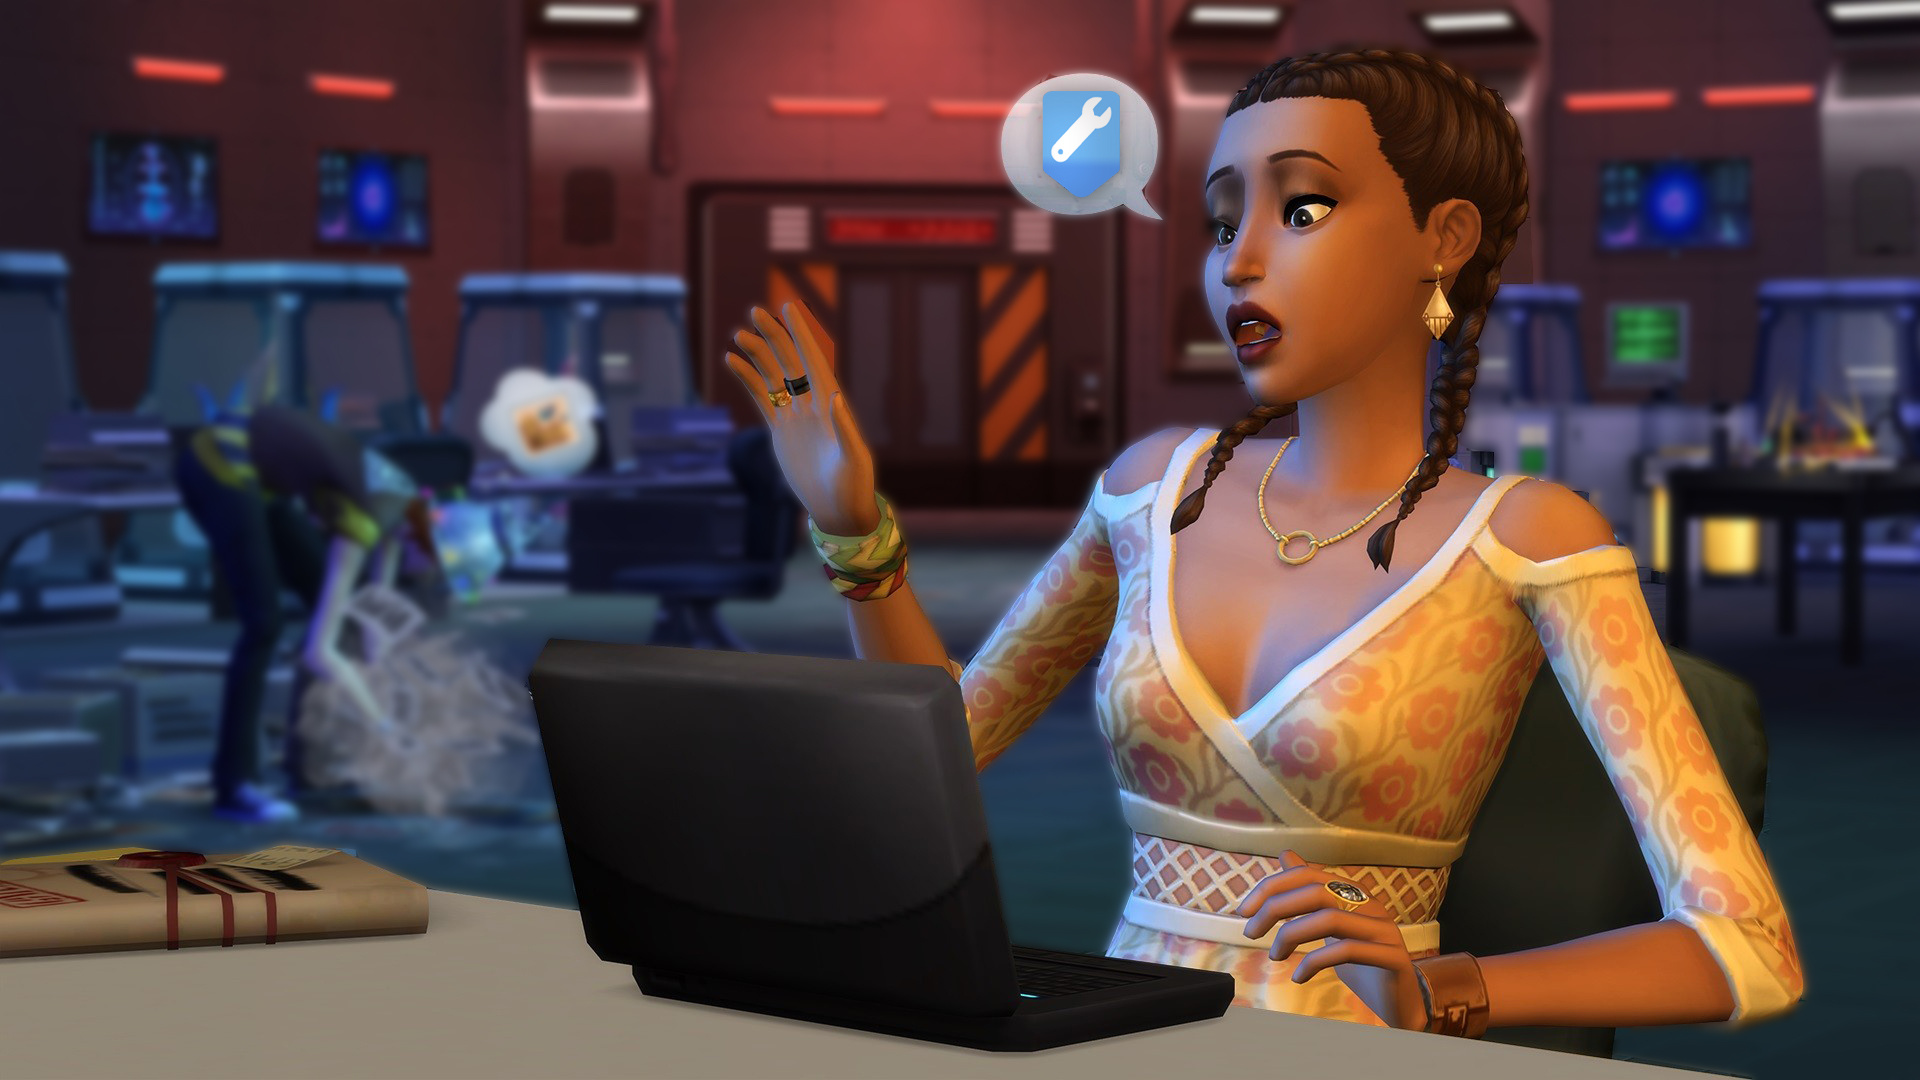 Гайд: Как устанавливать модификации в The Sims 4